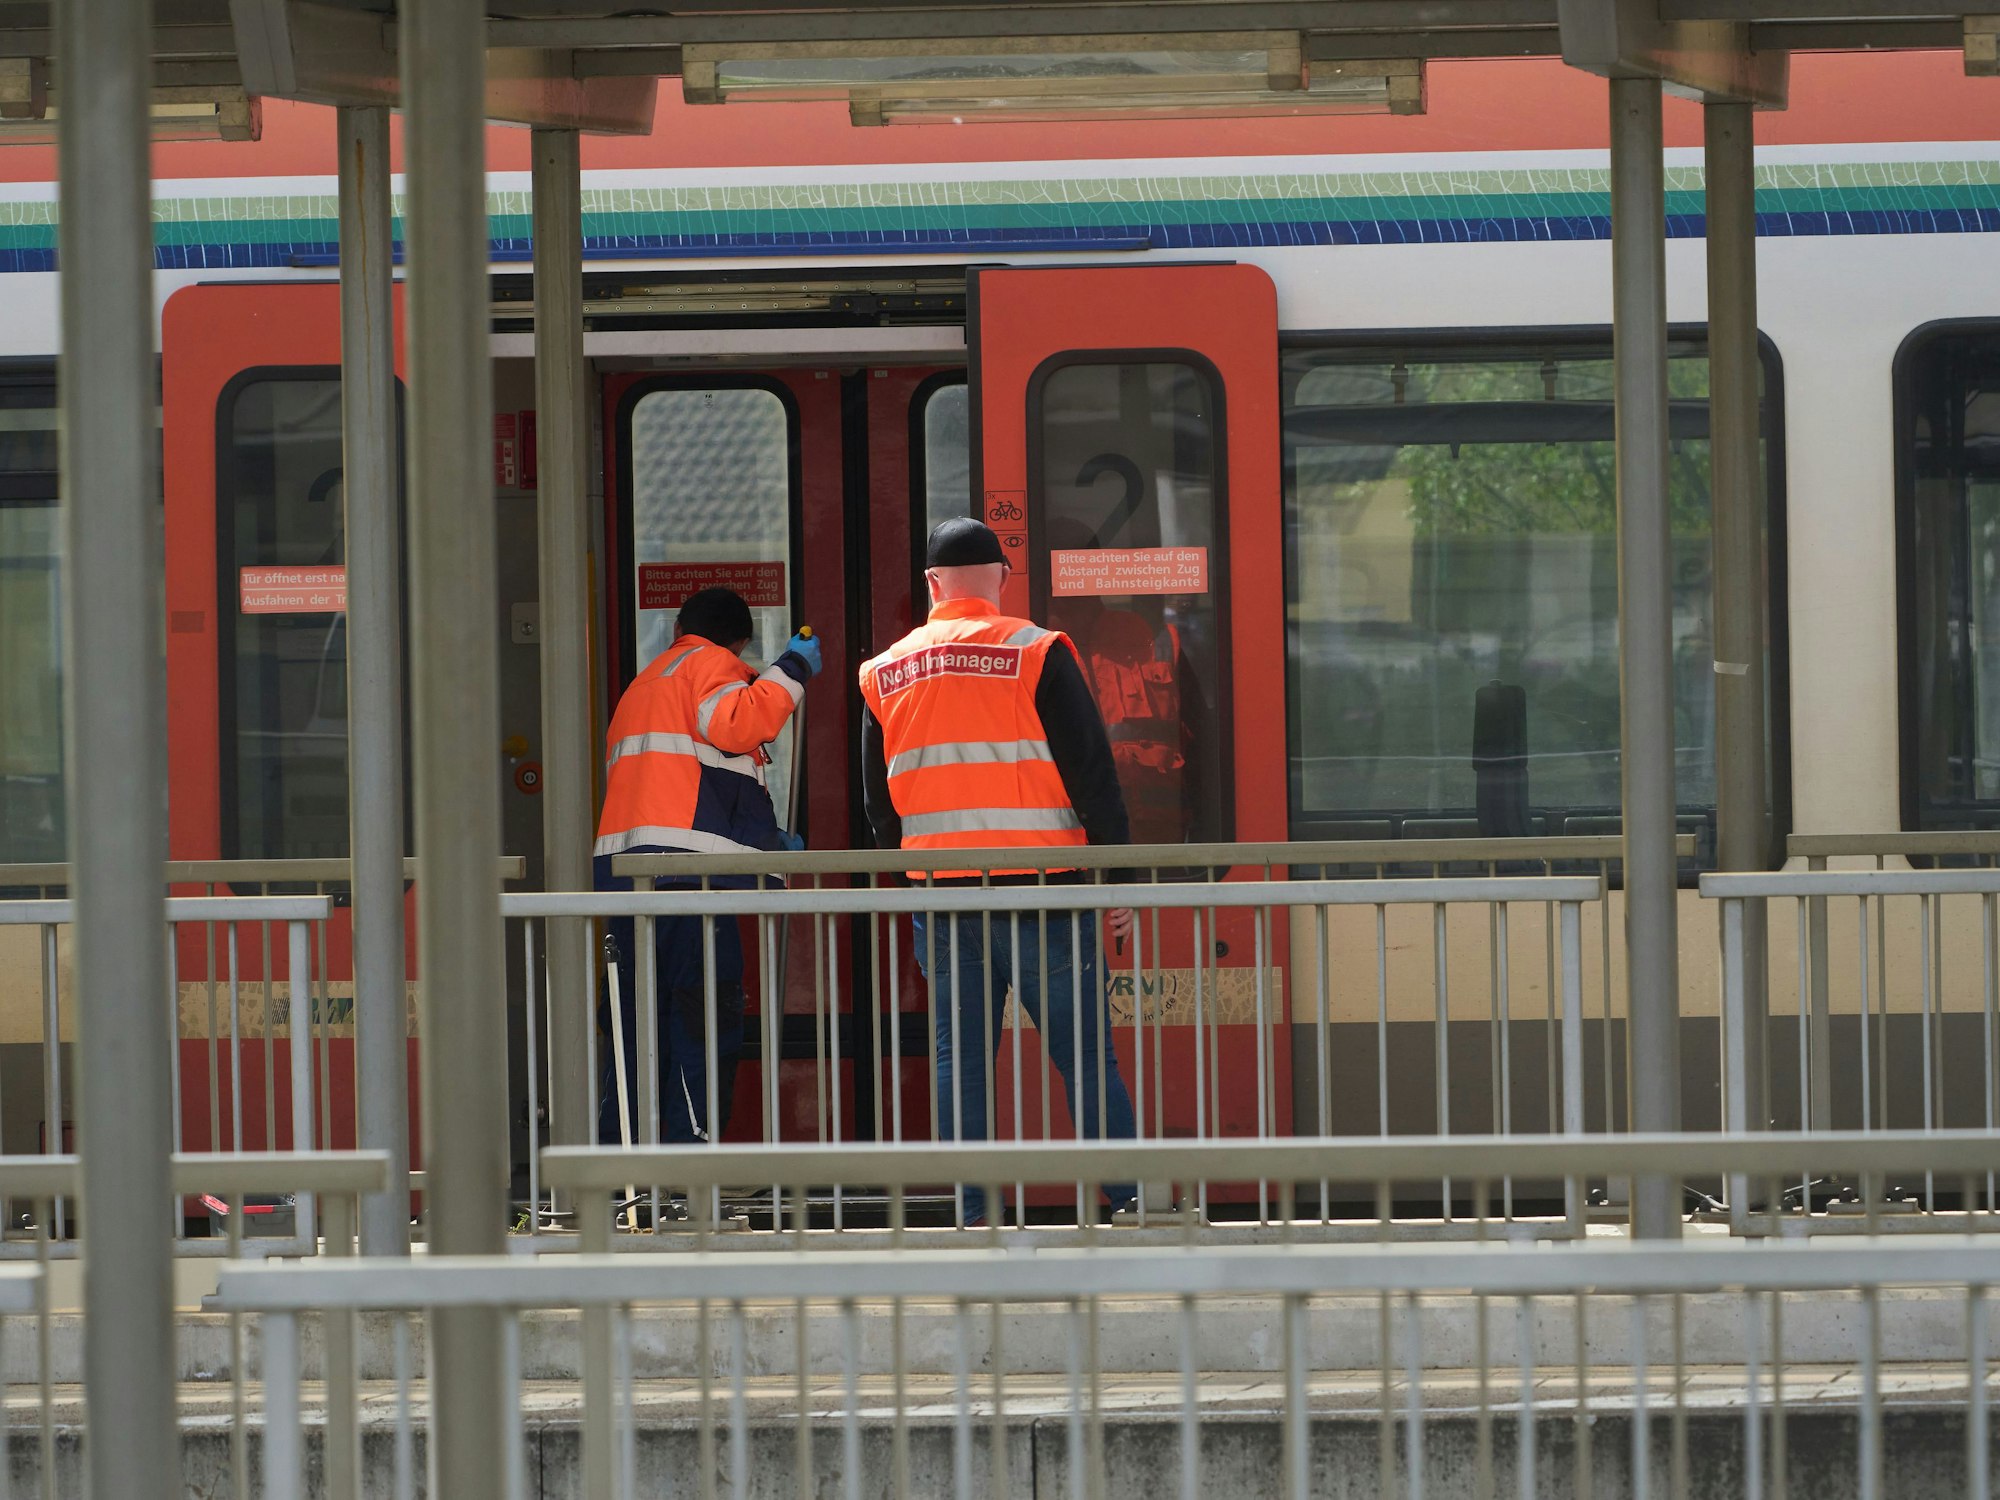 Ein Bahnbediensteter säubert am Bahnhof in Niederlahnstein einen Zug. Daneben steht ein Notfallmanager. In der Regionalbahn hat es einen Messerangriff auf einen Fahrgast gegeben, der schwer verletzt wurde.